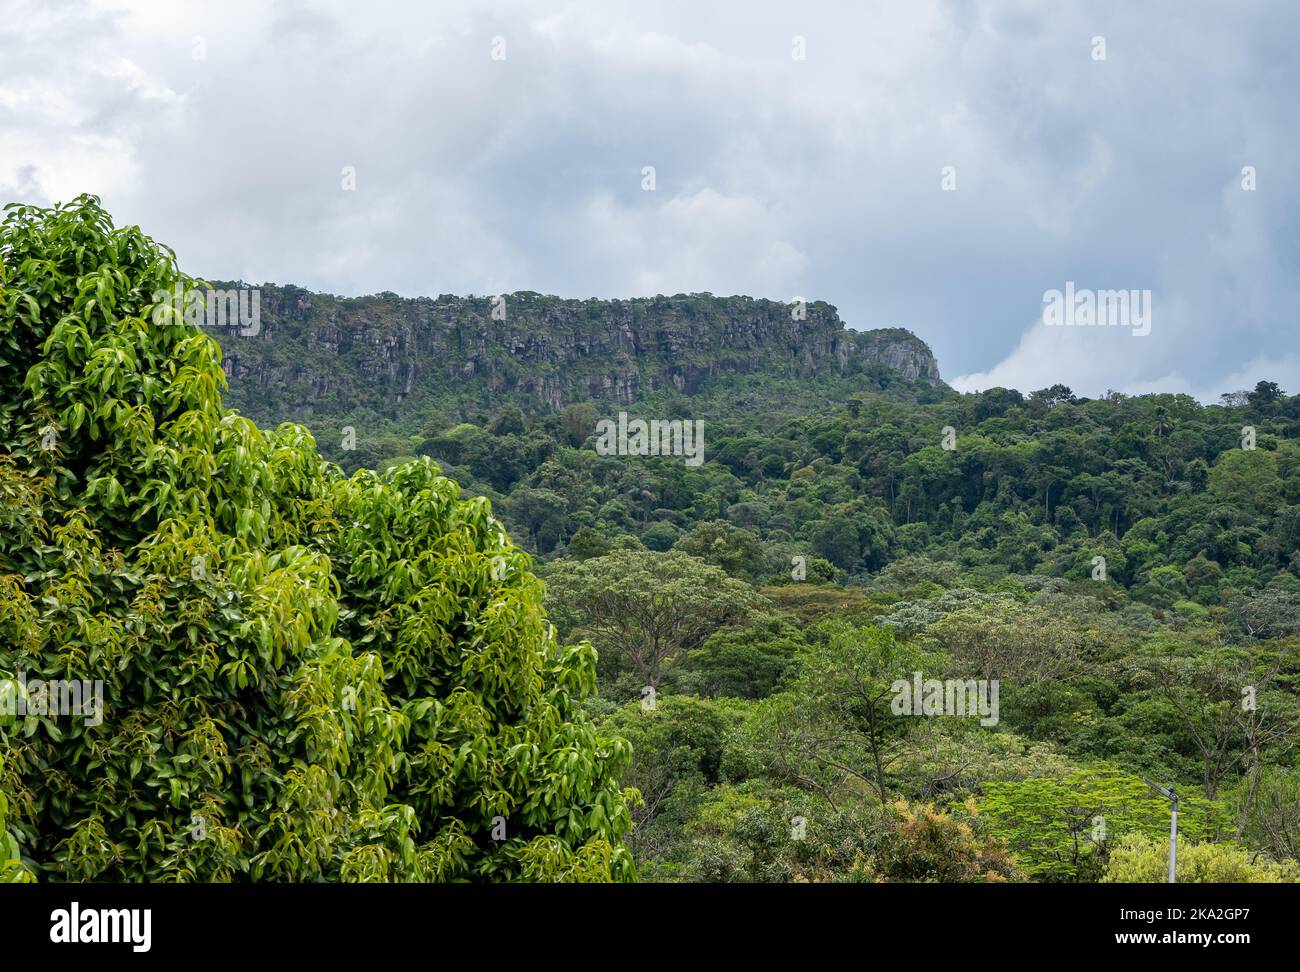 Les montagnes à sommet plat de Tepui sont composées de grès de quartz précambrien. Tepequem, Etat de Roraima, Brésil. Banque D'Images